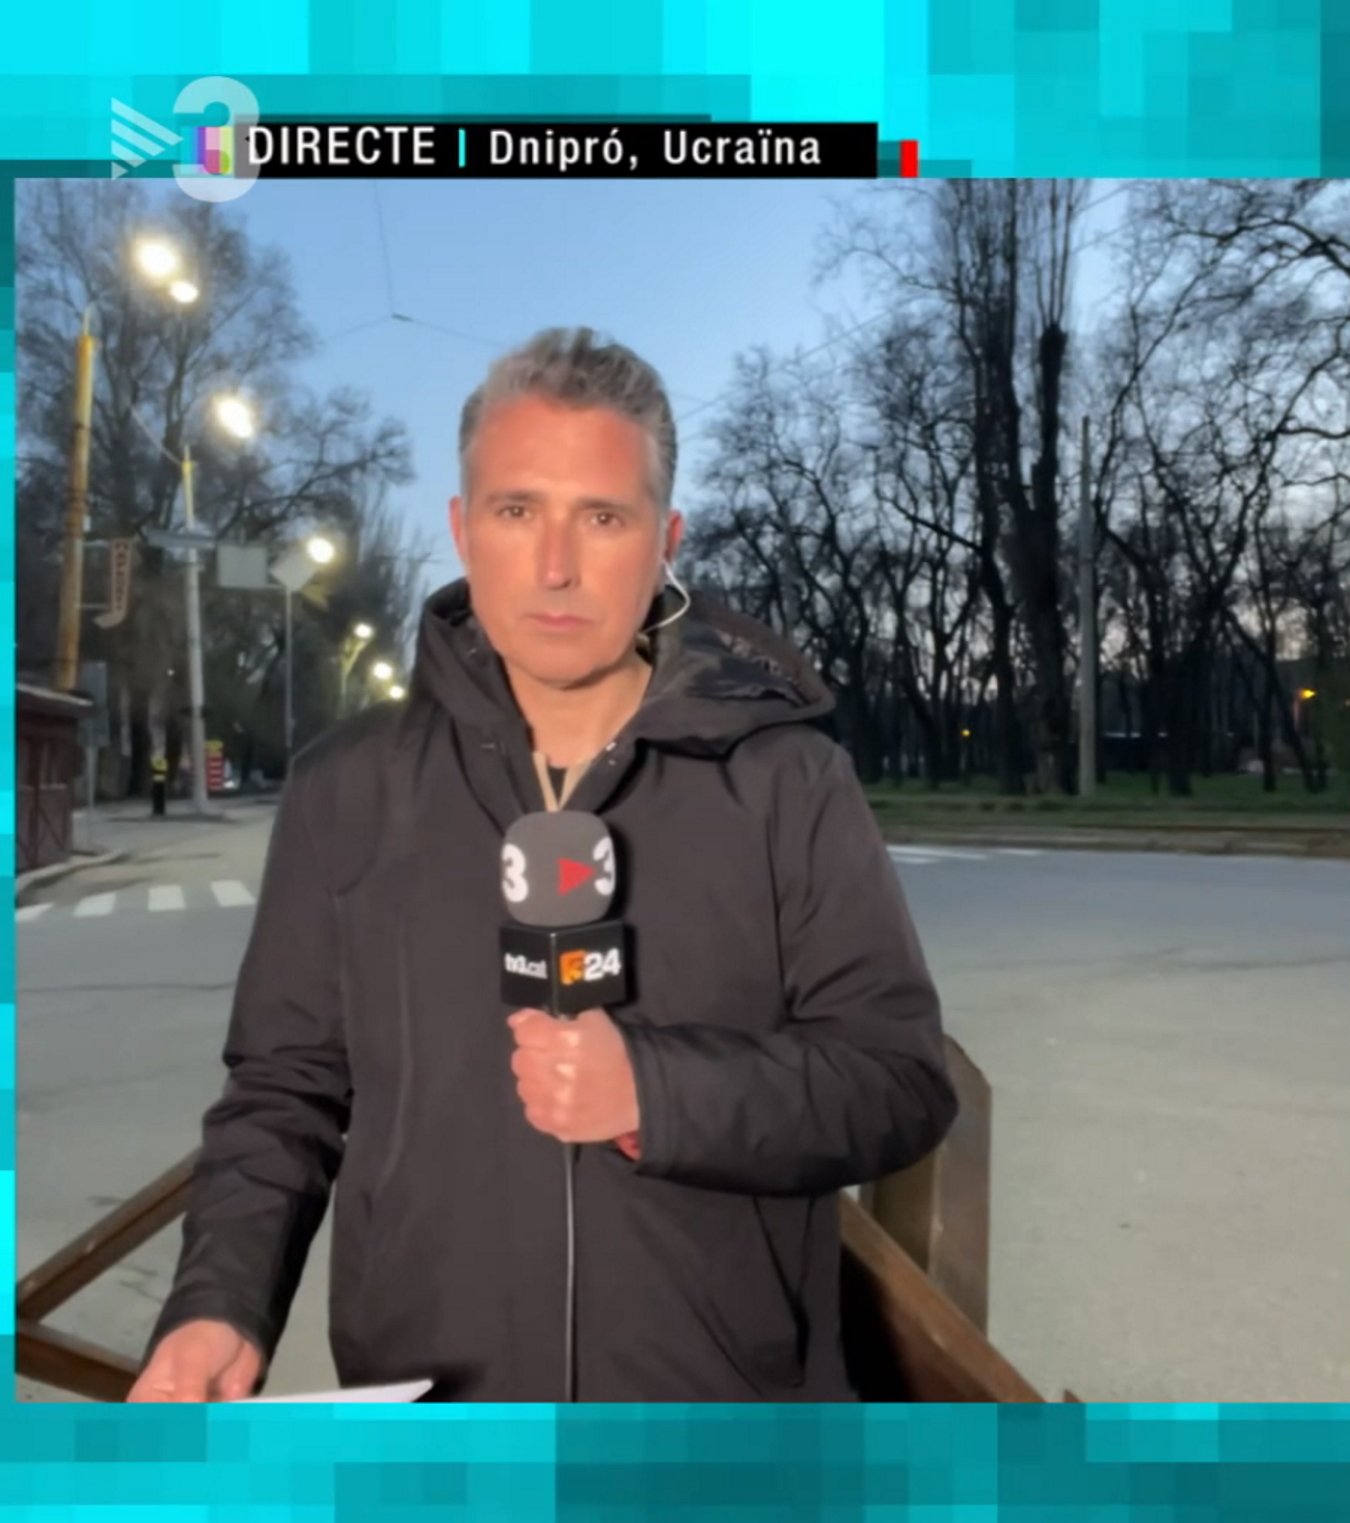 Presentador de TV3 en Ucrania enseña cómo es trabajar en un país en guerra